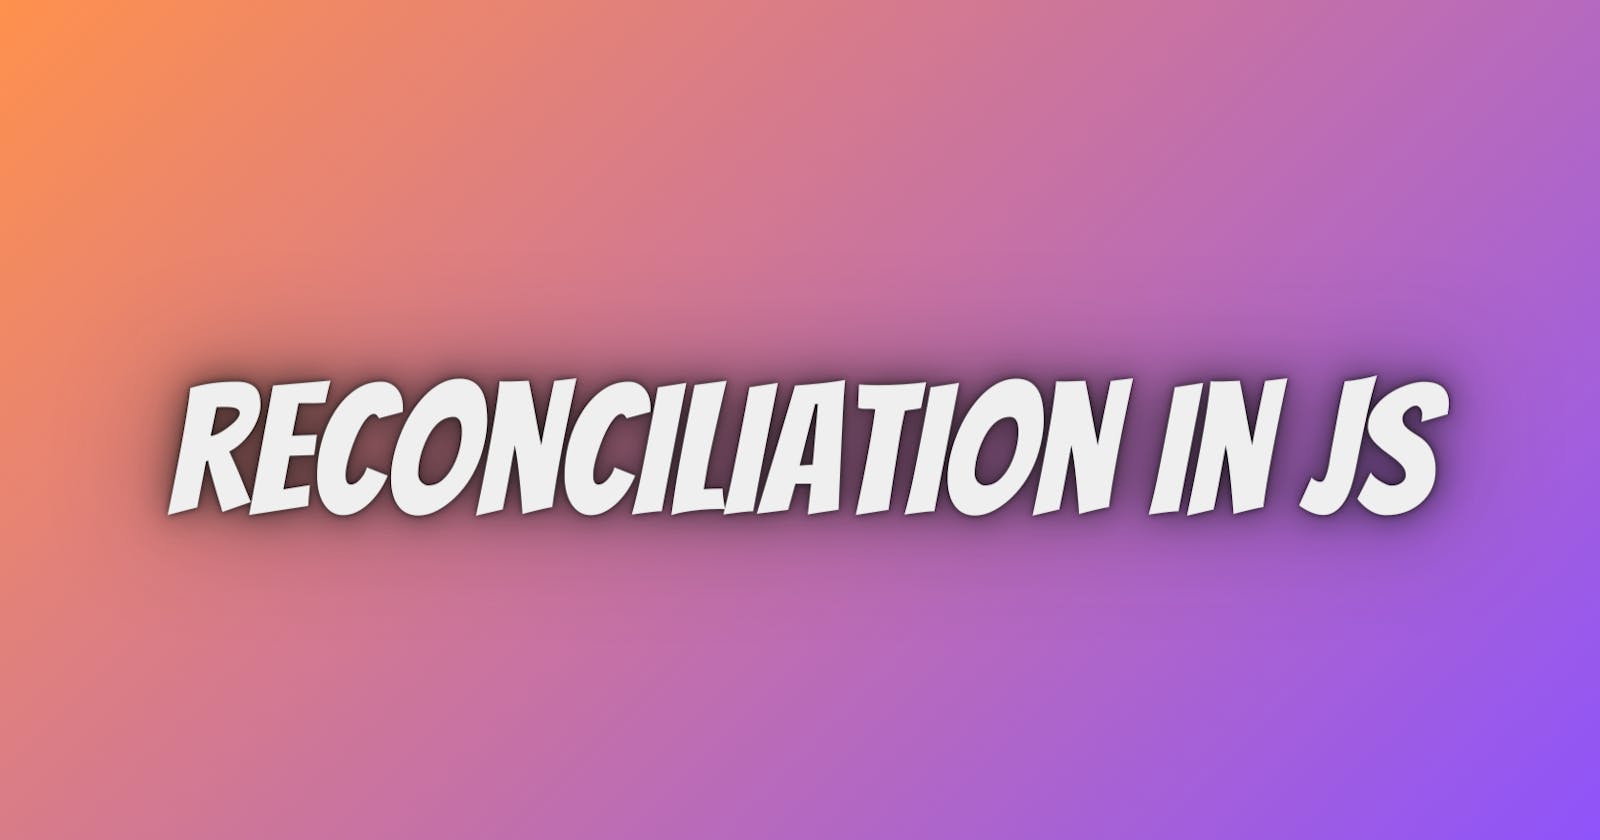 Understanding reconciliation in JS